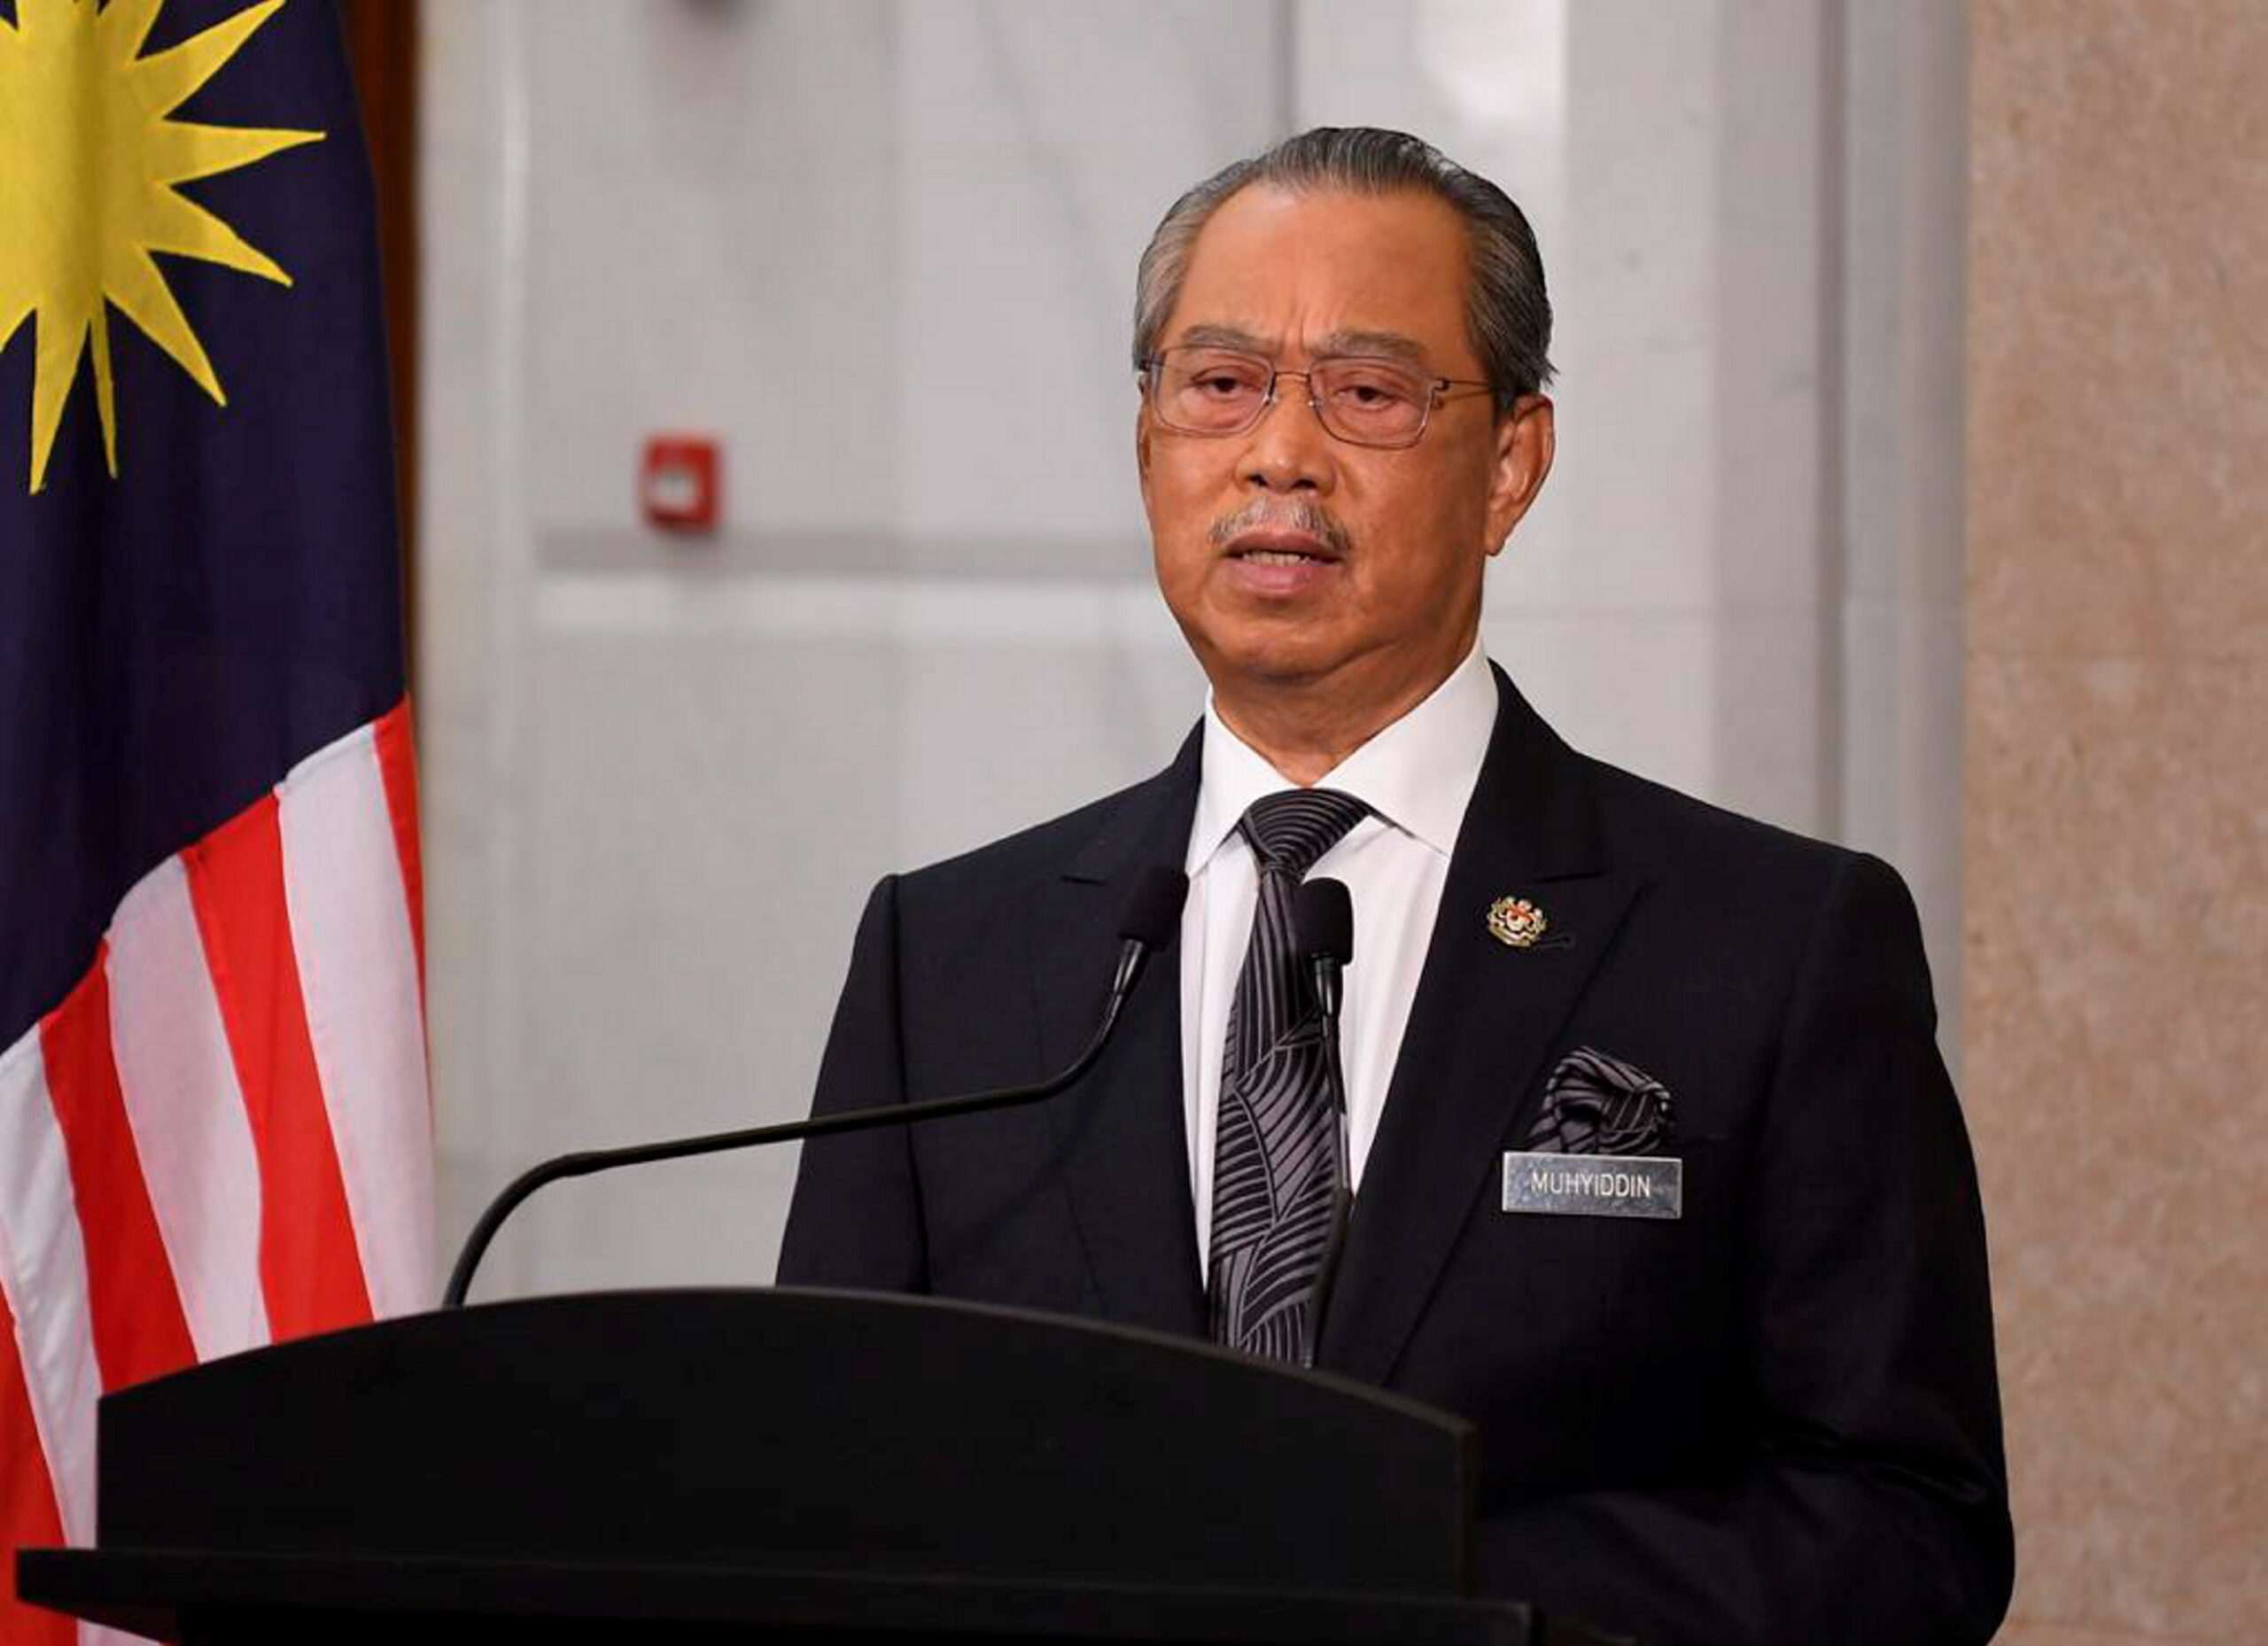 Menteri kewangan malaysia letak jawatan